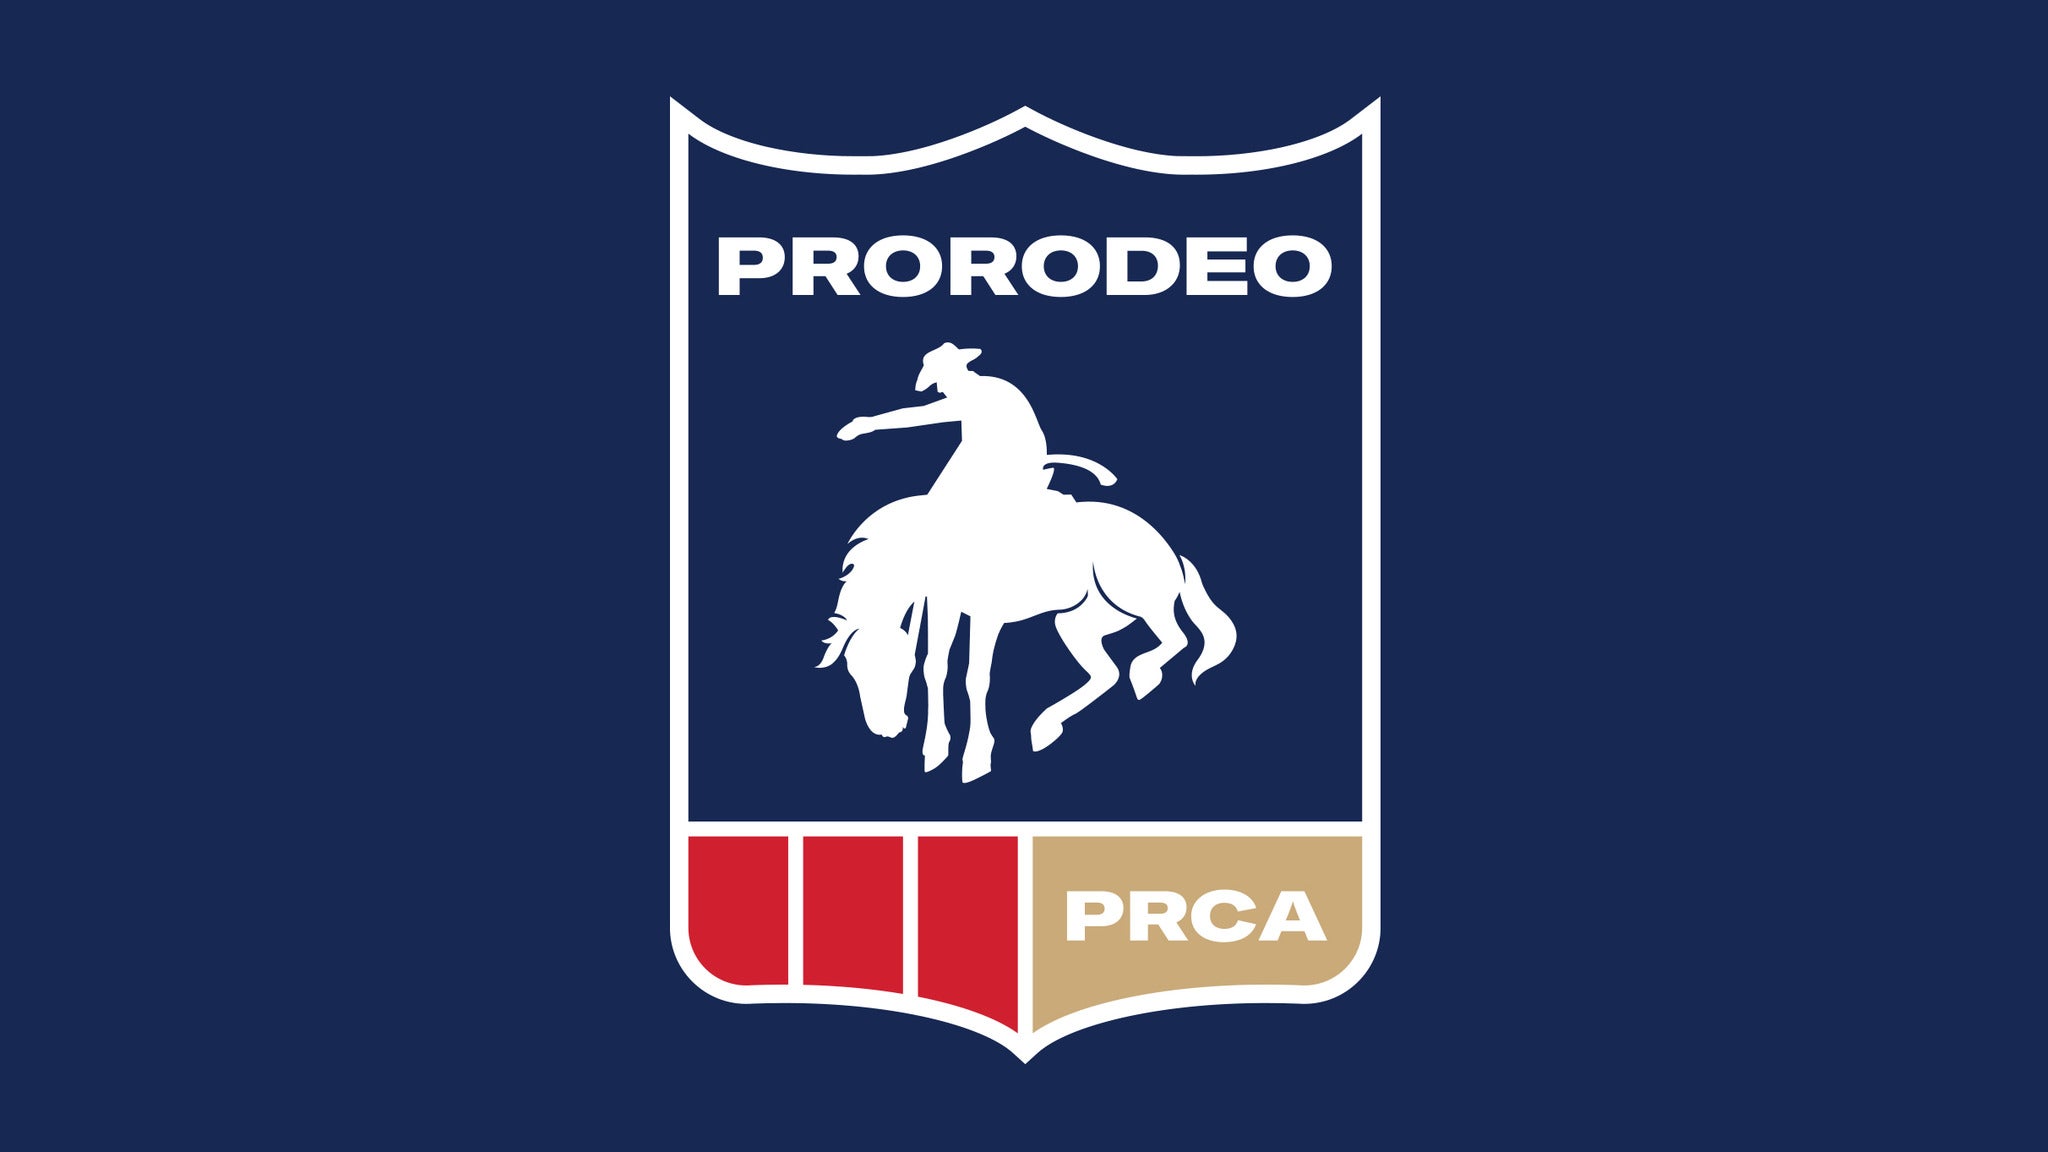 PRCA Championship Rodeo at Fargodome